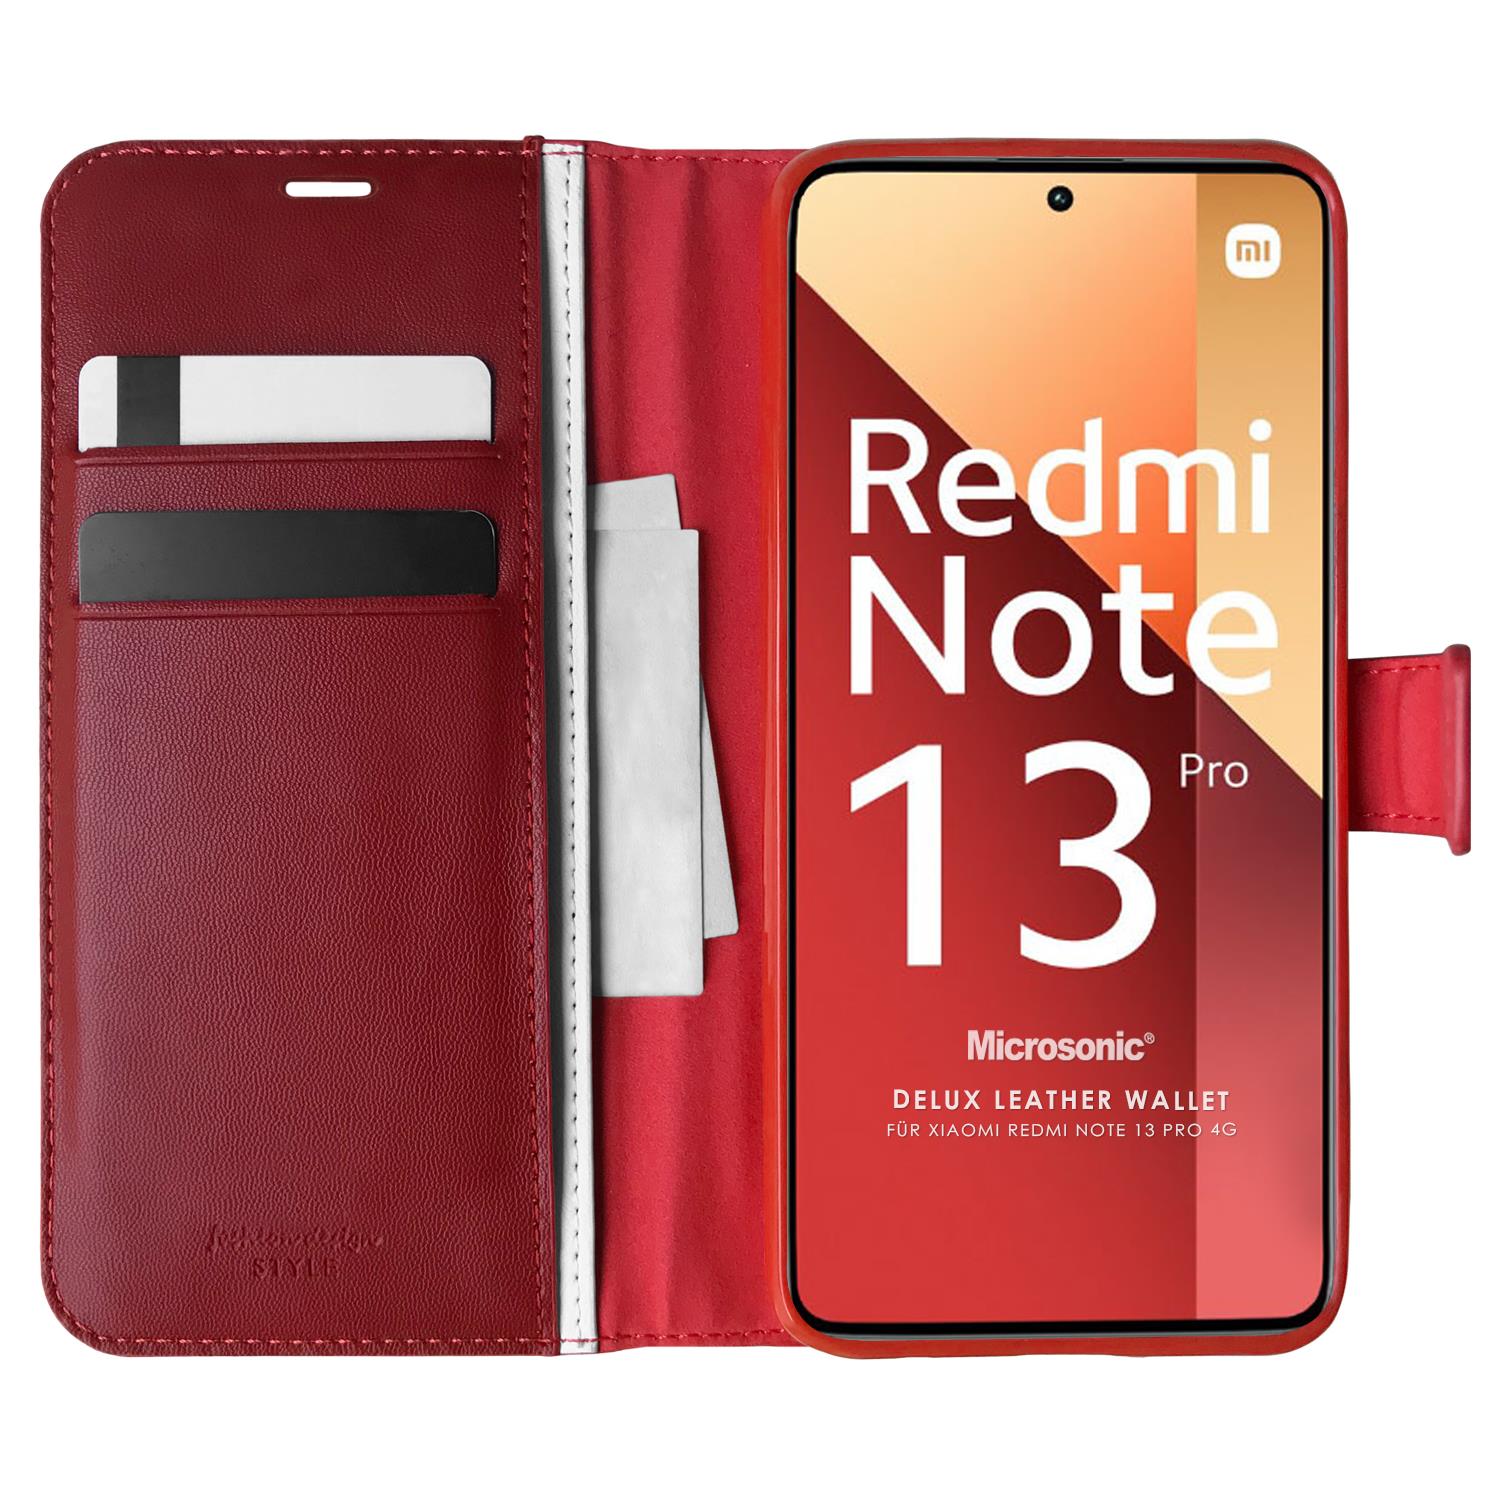 Microsonic Xiaomi Redmi Note 13 Pro 4G Kılıf Delux Leather Wallet Kırmızı